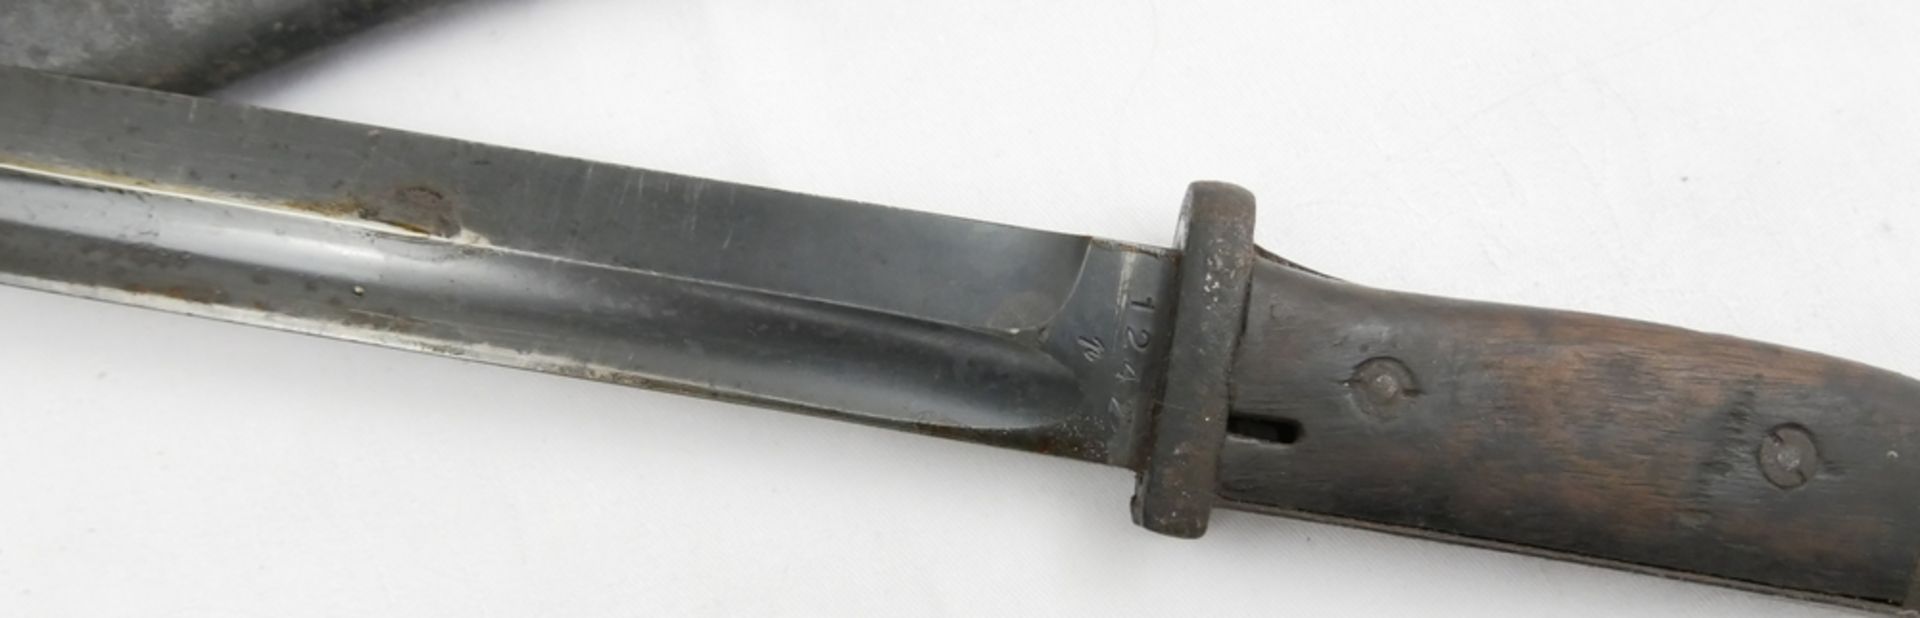 Ausgehbajonett K98 Fa. E. Hörster in Scheide. Gebrauchsspuren vorhanden. Klingenlänge ca. 25 cm, - Image 2 of 3